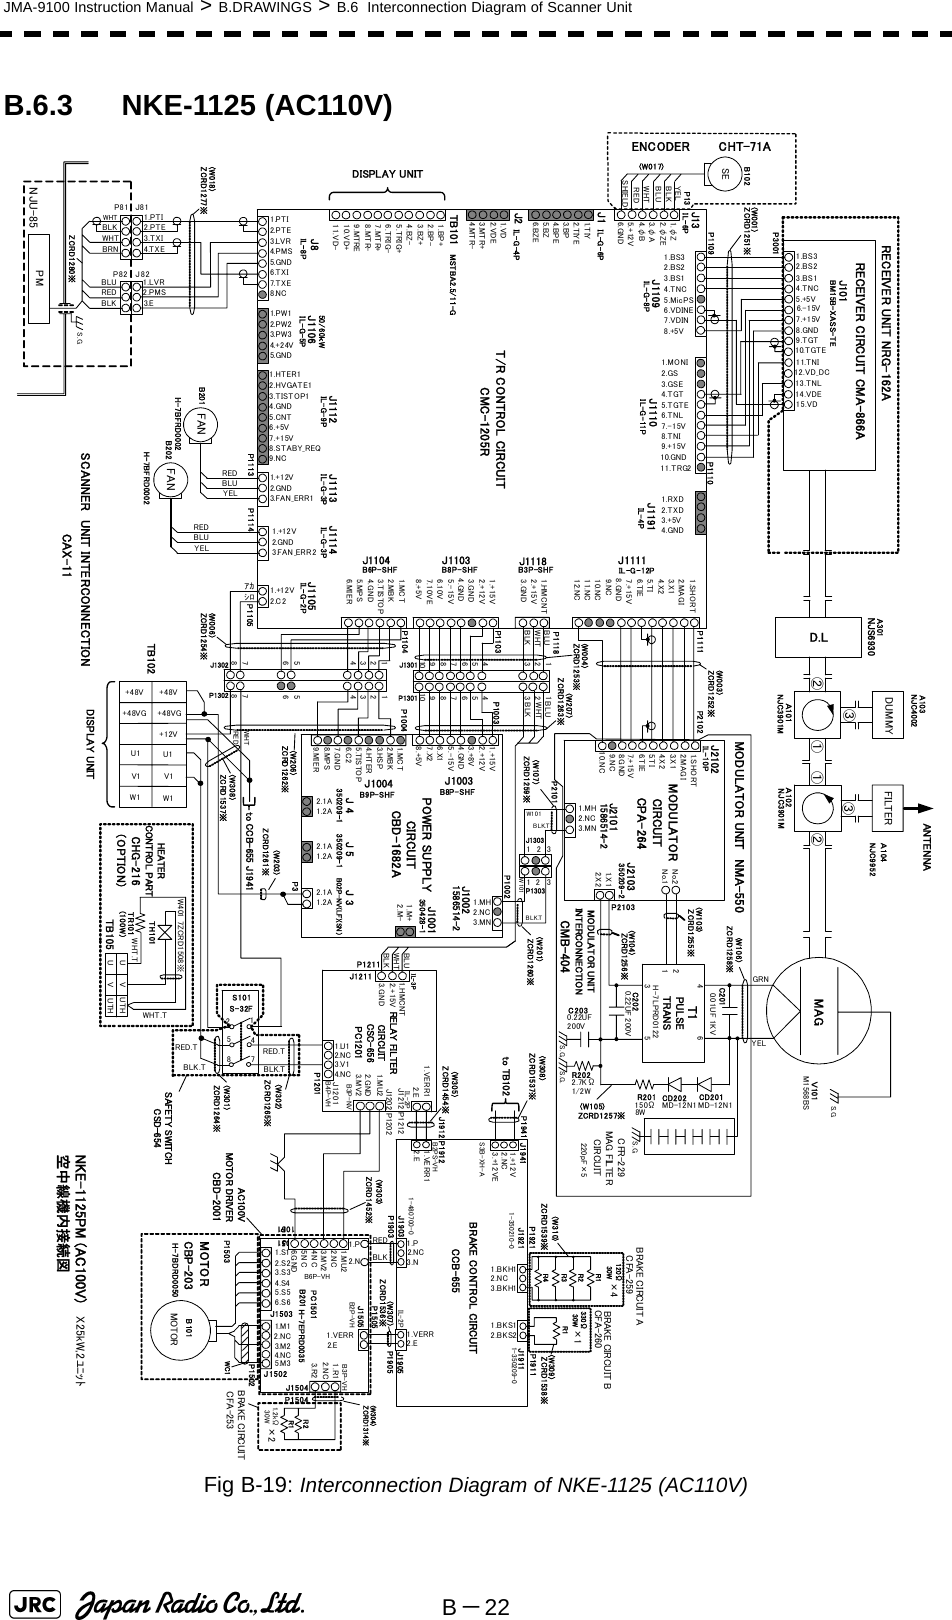 B－22JMA-9100 Instruction Manual &gt; B.DRAWINGS &gt; B.6  Interconnection Diagram of Scanner UnitB.6.3 NKE-1125 (AC110V)Fig B-19: Interconnection Diagram of NKE-1125 (AC110V) NKE-1125PM (AC100V)空中線機内接続図14.VDE12.VD_DC15.VD9.TGT10.TGTE13.TNL11.TNI1.BS32.BS23.BS14.TNC5.+5V6.-15V7.+15VRECEIVER UNIT NRG-162ARECEIVER CIRCUIT CMA-866AJ101BM15B-XASS-TET/R CONTROL CIRCUITCMC-1205R1.MONI2.GS3.GSE4.TGT5.TGTE6.TNL7.-15V8.TNI9.+15V10.GND11.TRG21.BS32.BS23.BS14.TNC5.MicPS6.VDINE7.VDIN8.+5V1.RXD2.TXD3.+5V4.GND1.SHORT2.M AG I3. X 14. X 25. T I6. T IE7.+15V8.GND9.NC10.NC11.NC12.NC1.HMCNT2.+15V3.GND1.+15V2.+12V3.GND4.GND5.-15V6.10V7.10VE8.+5V1.MC T2.MBK3.TISTOP4.G ND5.MPS6. MI E R1. T IY2.TIYE3.BP4.BPE5.BZ6.BZE1.+12V2.GN D3.FAN_ERR11.HTER12.HVGATE13.TISTOP14.GND5.CNT6.+5V7.+15V8.STABY_REQ9.NC1.PW12.PW23.PW34.+24V5.GN D1.BP+2.BP-3.BZ+4.BZ-5.TRIG+6.TRIG-7.MTR+8.MTR-9.MTRE10.VD+11.VD-1.VD2.VDE3.MTR+4.MTR-J1118J1103J1104 J1111J1191J1110J1109TB101J8 J1106J1112 J1113IL -G - 1 2PIL-G-8P IL-G-11PB6P-SHFIL-G-9PMSTBA2.5/11-GIL-G-5PB3P-SHFIL-4PB8P-SHFIL-G-3PMAGPOWER SUPPLY CIRCUITCBD-1682A1.+15V2.+12V3.+8V4.GND5.-15V6.X17.X28.+5V1.MC T2.MBK3. HS P4. HT E R5.TISTOP6.C 27.GND8.MPS9. MI E R2.1A1.2A2.1A1.2A2.1A1.2A1.MH2.NC3.MN1.MH2.NC3.MN1. X 12. X 2No.2No.1214356FILTERJ1004 J1003J 5J 4 J 3J1001J1002J2102J2101J2103ANTENNA1. SH O R T2.MA G I3.X14.X25.TI6.TIE7.+15VB9P-SHF B8P-SHF1586514-2350209-1IL-10P350209-2350209-1350428-1MODULATOR CIRCUITCPA-264MODULATOR UNIT IN T ERCO N NECTI ONCMB-404D.L①②③①②③GRNYELC2010.01UF 1KVC2020.22UF 200VR202 2.7KΩ1/2WC2030.22UF200VT1 R201150Ω8WH-7LPRD0122CD202 CD201MD-12N1MD-12N1NJC3901MＡ101 Ａ102P3001P1109 P1110P1104P1103 P1003P1004P1111PULSE TRANSP3P2103DUMMYA103(W001)(W003)P10021.+12V2.GND3.FAN_ERR2J1114IL-G-3P1.+12V2.C2J1105IL-G-2PP1105MODULATOR UNIT NMA-550SCANNER UNIT INTERCONNECTIONCAX-11(W106)(W103)(W104)(W105)ZCRD1255※ZCRD1257※J1IL-G-6PJ2IL- G -4PZCRD1256※A301NJS6930ZCRD1252※ZCRD1258※ZCRD1251※ZCRD1253※(W004)(W207)ZCRD1263※ZCRD1254※1.φZ2.φZE3.φ A4.φB5.+12V6.GNDJ13IL-6P50/60ｋWｱｶｼﾛDISPLAY UNITP2101P21028.GND1.M+2.M-1586514-2NJC40029.NC10.NCB02P-NV(LF)(SN ）S. G.S.G.S.G.8.G ND1234567891012345678910WHTBLKP1118BLUWHTBLKBLUP1301J1301(W006)1234123456567878SEYELBLKBLUWHTREDSHIELDB102ENCODER CHT-71AP13(W017)FANREDBLUYELB201B202 FANREDBLUYELP1113 P1114REDWHTZCRD1262※(W206)12BLK.T21 33BLK.T(W107)ZCRD1259※J1303P1303P1302J1302(W201)ZCRD1260※W101W1011.PTI2.P T E3.LVR4.PMS5.GN D6.TXI7. T X E8.NCIL-8P1.PTI2.PTE1.LVR2.PMS3.E3.TXI4.TXEJ82J81PMP81P82WHTBLKBLUREDBLKWHTBRNNJU-85ZCRD1280※(W018)ZCRD1277※X25kW,2ﾕﾆｯﾄS.G.NJC3901MH-7BFRD0002H-7BFRD0002M1568BSＶ101NJC9952Ａ104CFR-229MAG FILTER CIRCUITS.G.220pF×5HEATER CONTROL PARTCHG-216（OPTION）+48V+48VGU1V1W1U1W1V1DISPLAY UNITTB102+48V+48VG(W301)S101S-32F217548RED.T RED.TBLK.TBLK.TZCRD1264※(W302)ZC RD 12 65※+12VZCRD1261※(W203)SAFETY SWITCHCSD-654to CCB-655 J1941ZCRD1537※(W308)UVUTHUVUTHTH101W401 7ZCRD1508※TR101（100W）TB105WHT.TWHT.TWHTBLKBLUZCRD1454※(W305)P1212BRAKE CIRCUITCFA-253J15011.VERR2.EH-7EPRD0035B201J1505PC1501P1501B2P-VHP1505P1201RELAY  FIL TER CIRCUITCSC-656PC1201IL-3P1.HMCNT2.+15V3.G NDP1211J12121.VERR12.EJ1201J12111.U13.V12.NC4.NCB4P-VHIL-2P1.VERR12.E1.VERR2.E1.P2.NC3.N1.P2.N1.BKH13.BKH11.BKS12.BKS21.+12V2.NC3.+12VEP1941 J1941J1903P1903J1905P1905J1912 P1912BRAKE CONTROL CIRCUITCCB-655P1502J1921P1921J1911P1911to TB102REDBLKIL-2PB2PS-VHS3B-XH-A1-350210-0 1-350209-01-480700-0ZC RD 15 37※(W308)ZCRD1536※(W307)ZCRD1452※(W303)WC1ZCRD1538※(W309)ZCRD1539※(W310)CBP-203H-7BDRD00502.NC4.NC1.S12.S23.S34.S45.S56.S6J1502J15033.M21.M15.M3P1503MOTORMOTORB101BRAKE CIRCUIT BCFA-260BRAKE CIRCUIT ACFA-259R1R2R3R4R1120Ω30W330Ω30W×4×12.NC3.MV21.MU22.NC4.NC5.NC6.G N DB6P-VH(W304)ZCRD1314※R1R2P15041.R13.R2J1504B3P-VH2.NCP12021.MU23.MV2J12022.GNDB3P-NV1.2kΩ30W×2AC100V MOTOR DRIVERCBD-2001